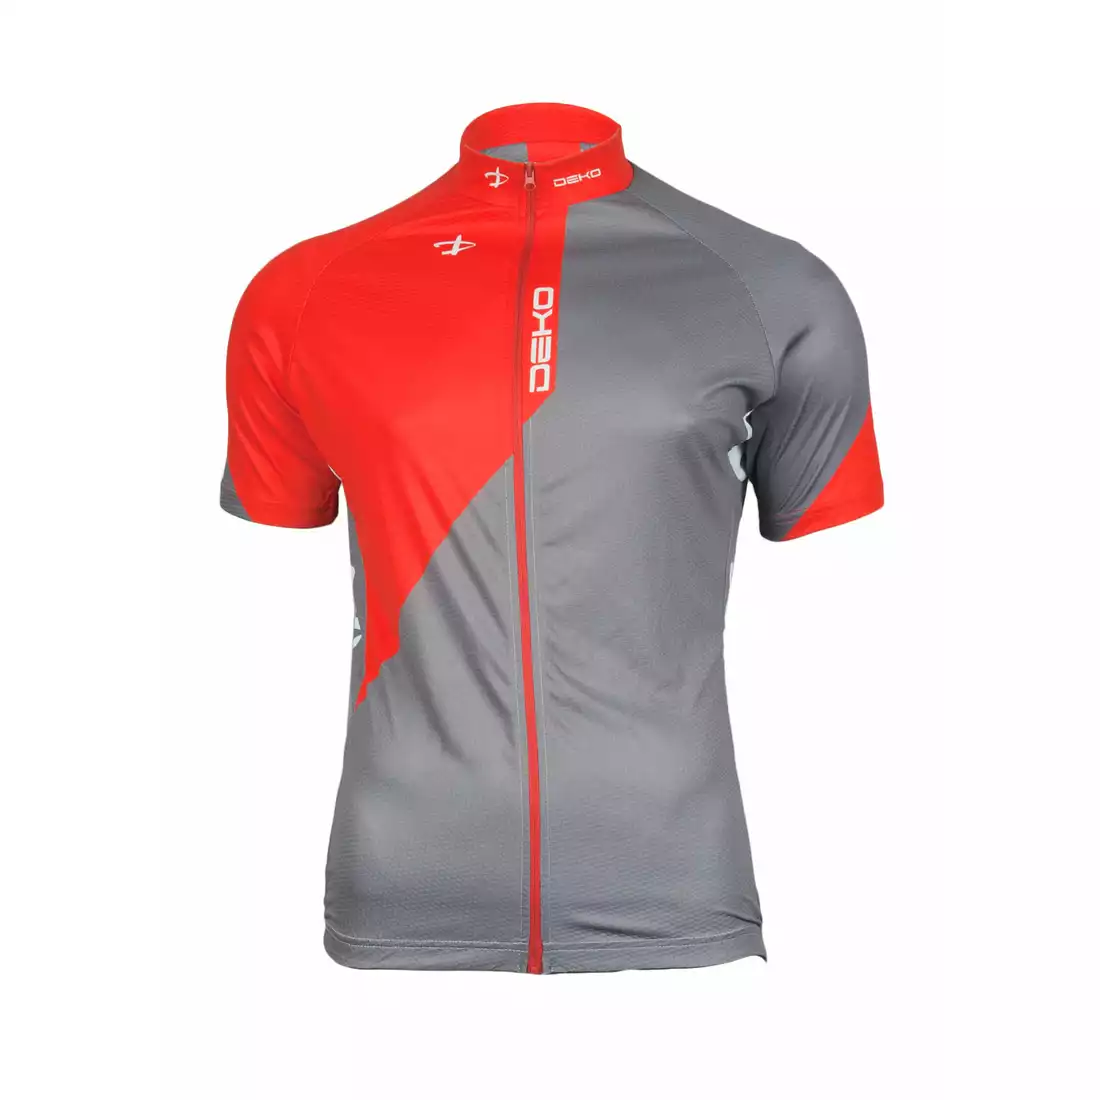 DEKO CHARCOAL - męski zestaw rowerowy spodenki+koszulka czarno-szaro-czerwony